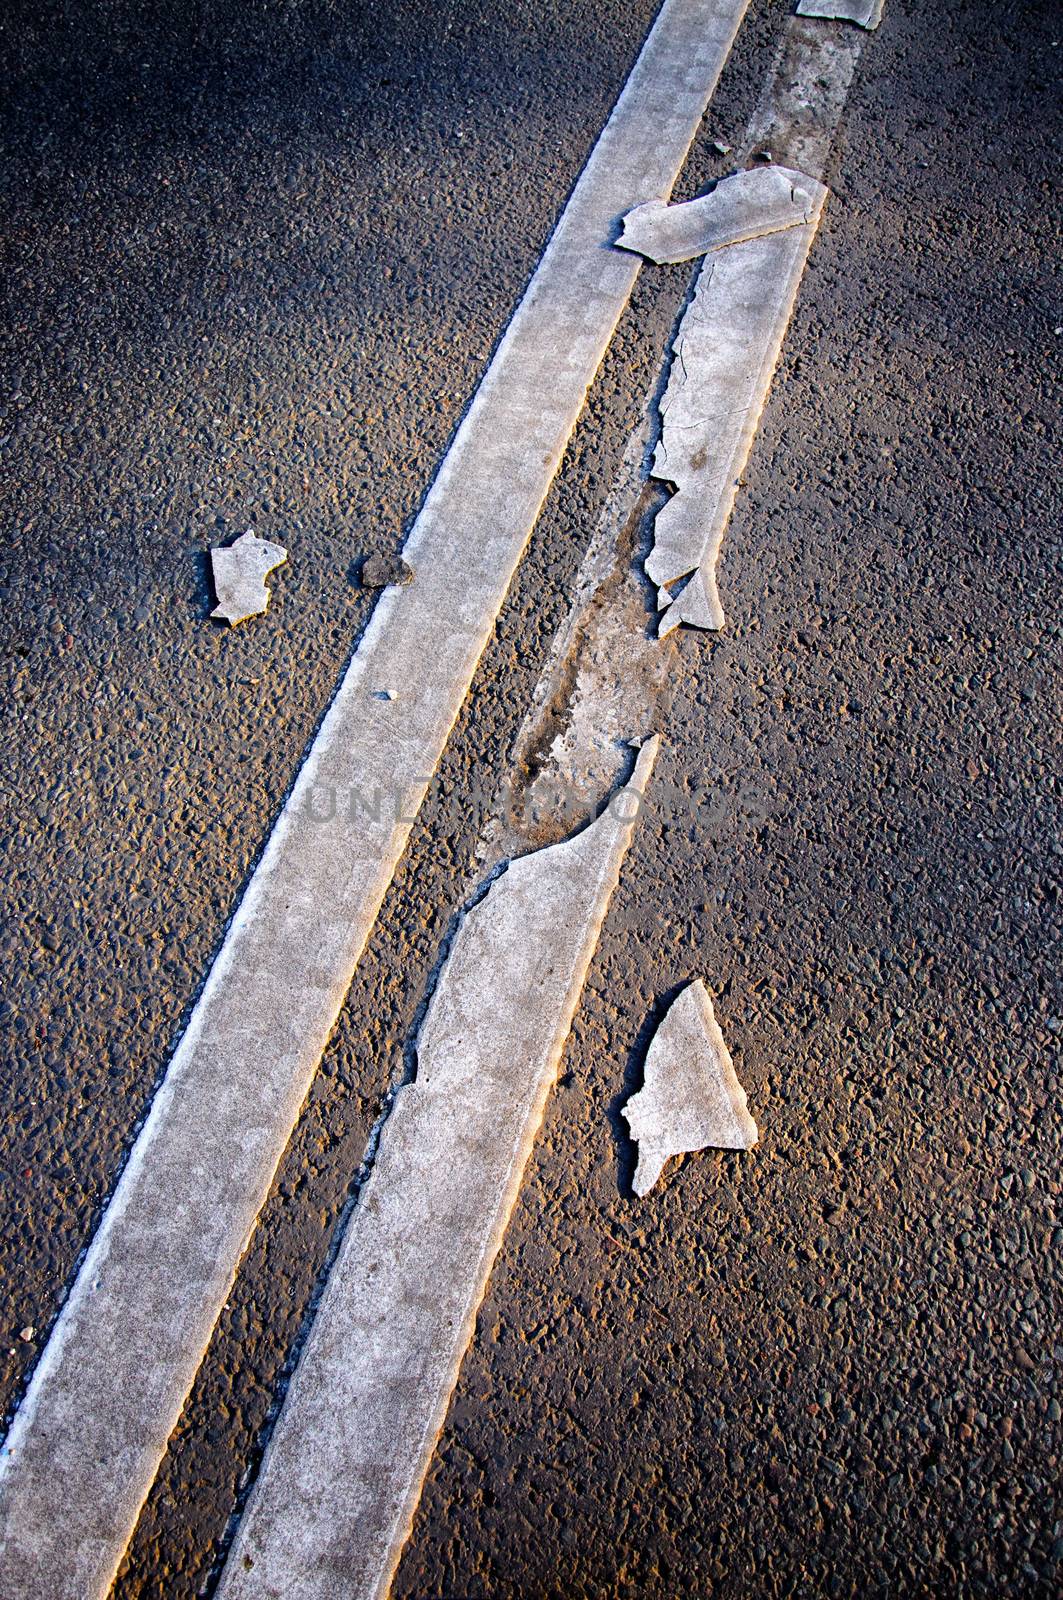 Brocken line of an asphalt road marking close-up by Eagle2308